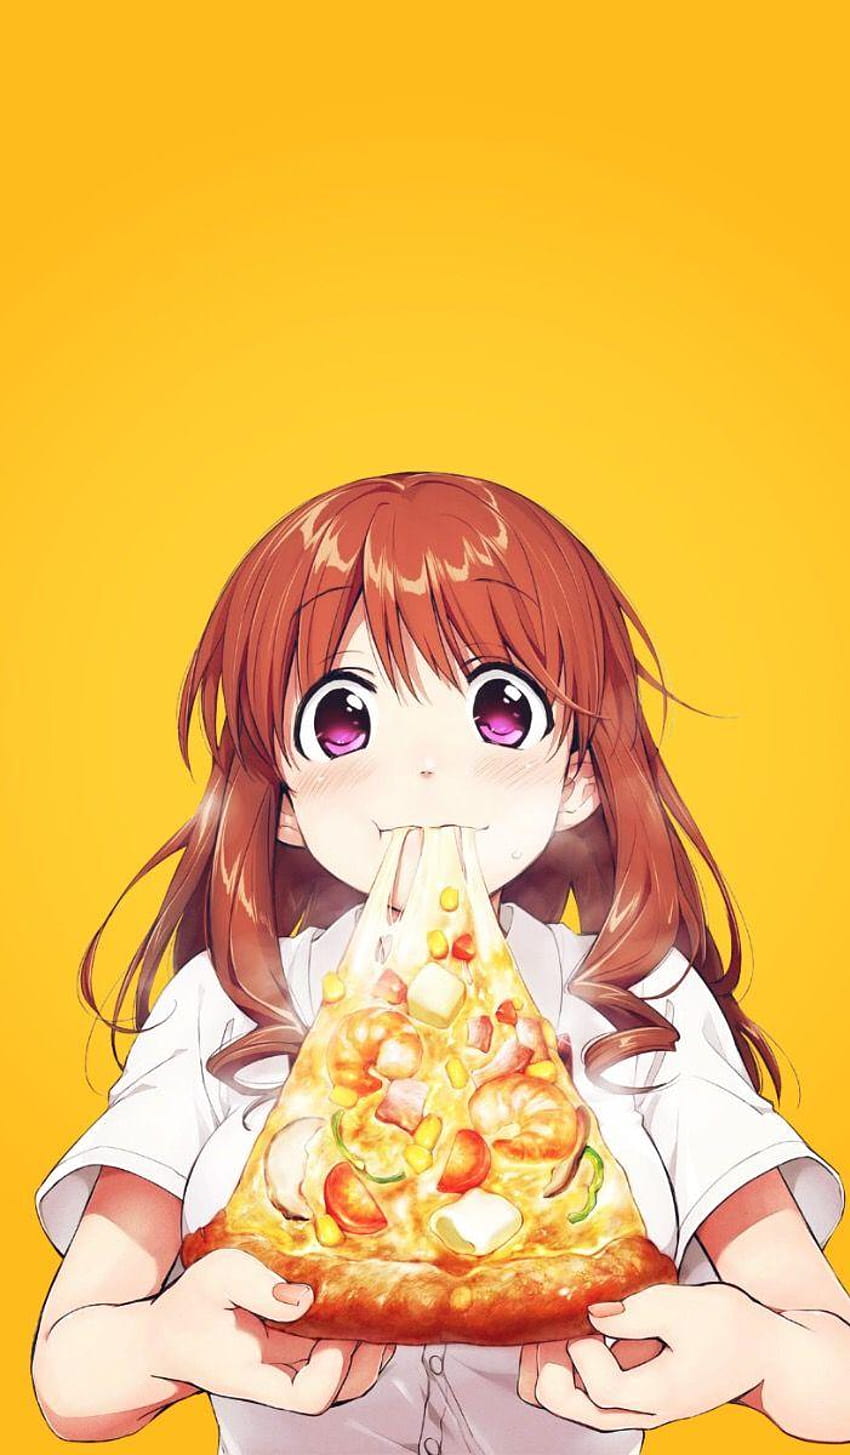 Anime Girl Eating Stock Illustrations – 228 Anime Girl Eating Stock  Illustrations, Vectors & Clipart - Dreamstime